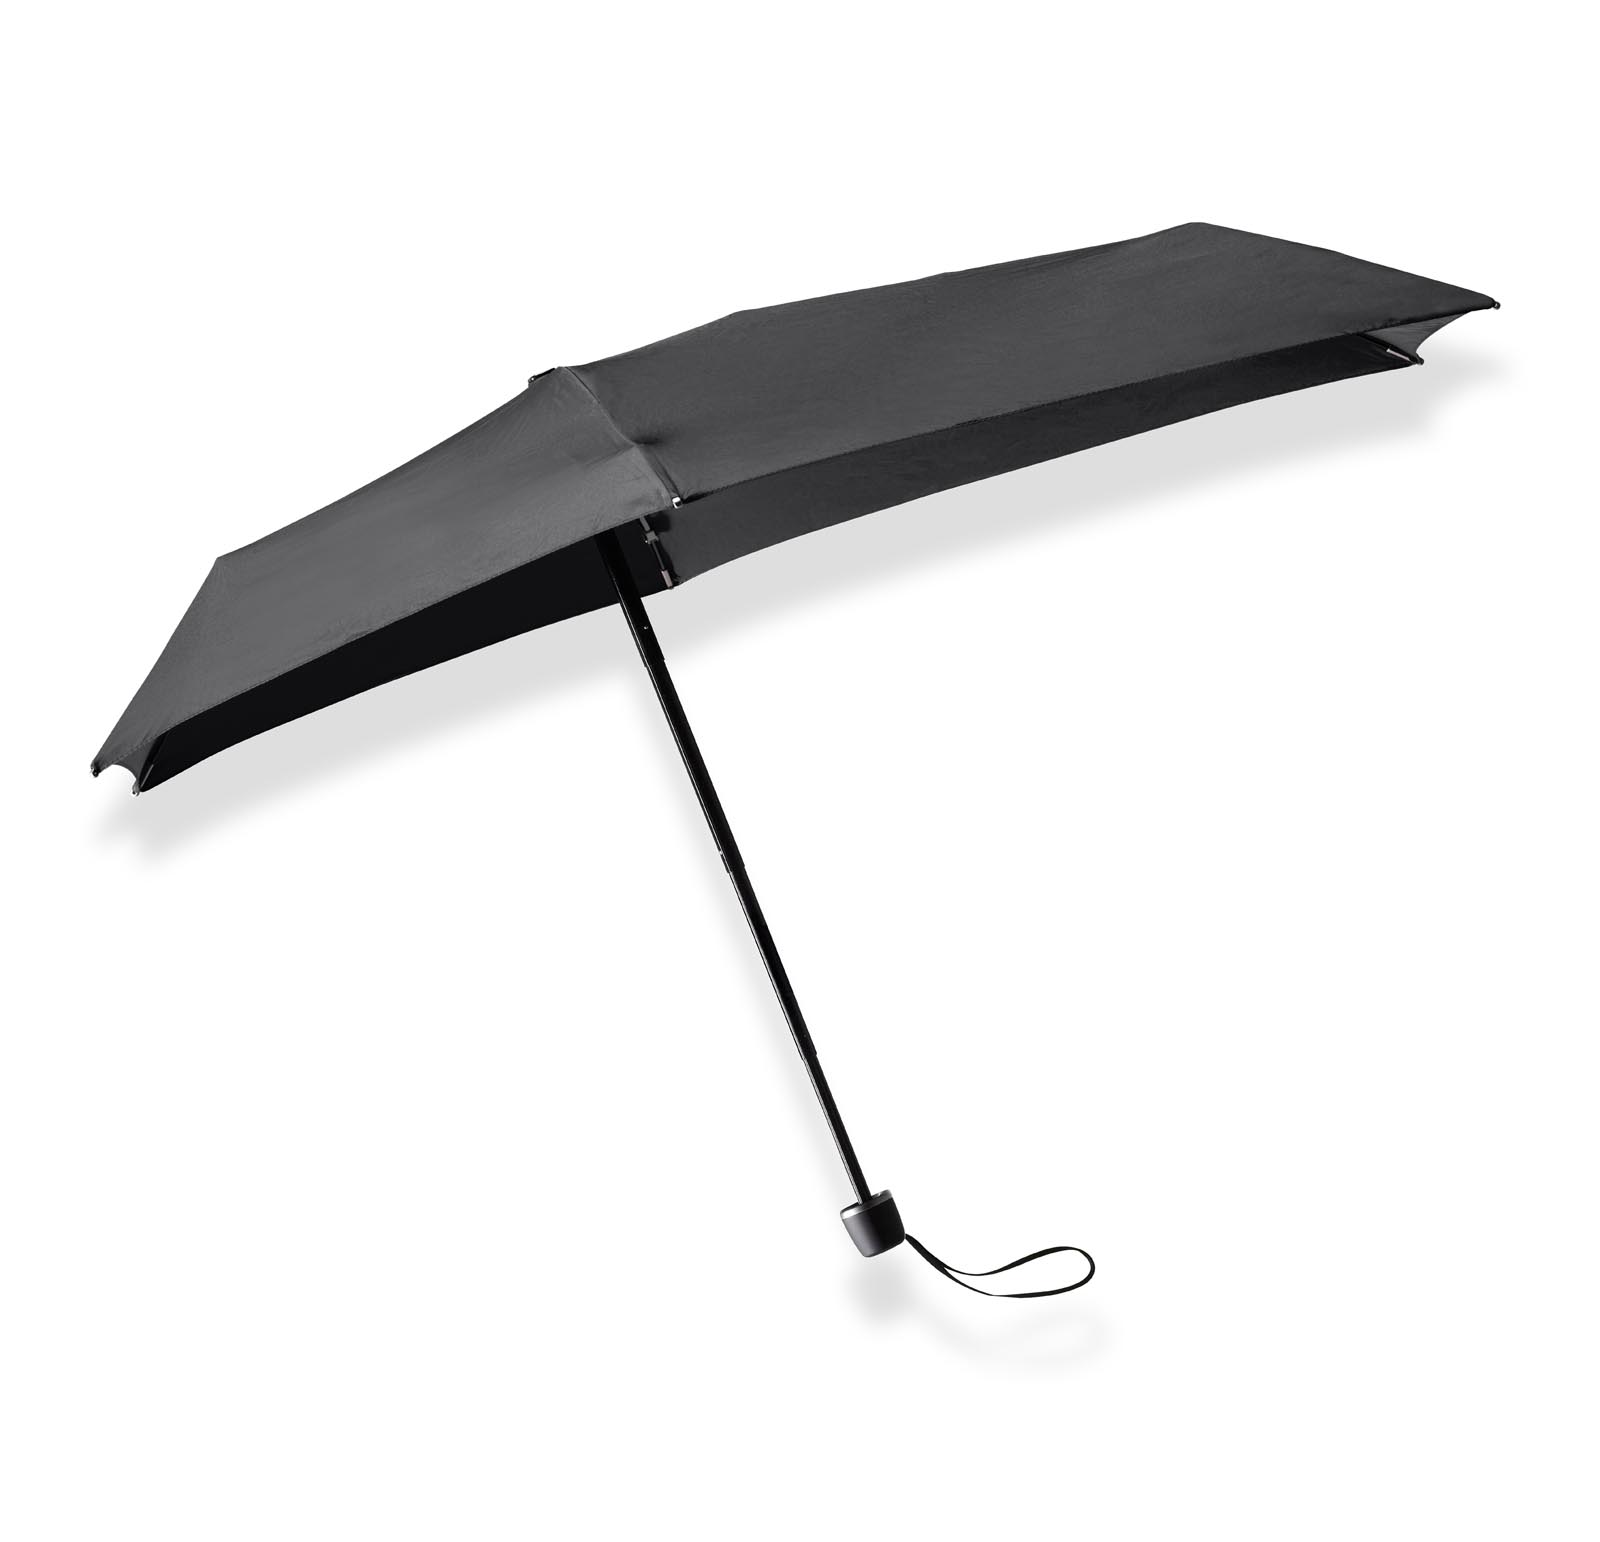 Aanzienlijk Humoristisch detectie Zwarte opvouwbare paraplu micro kopen? senz° micro pure black